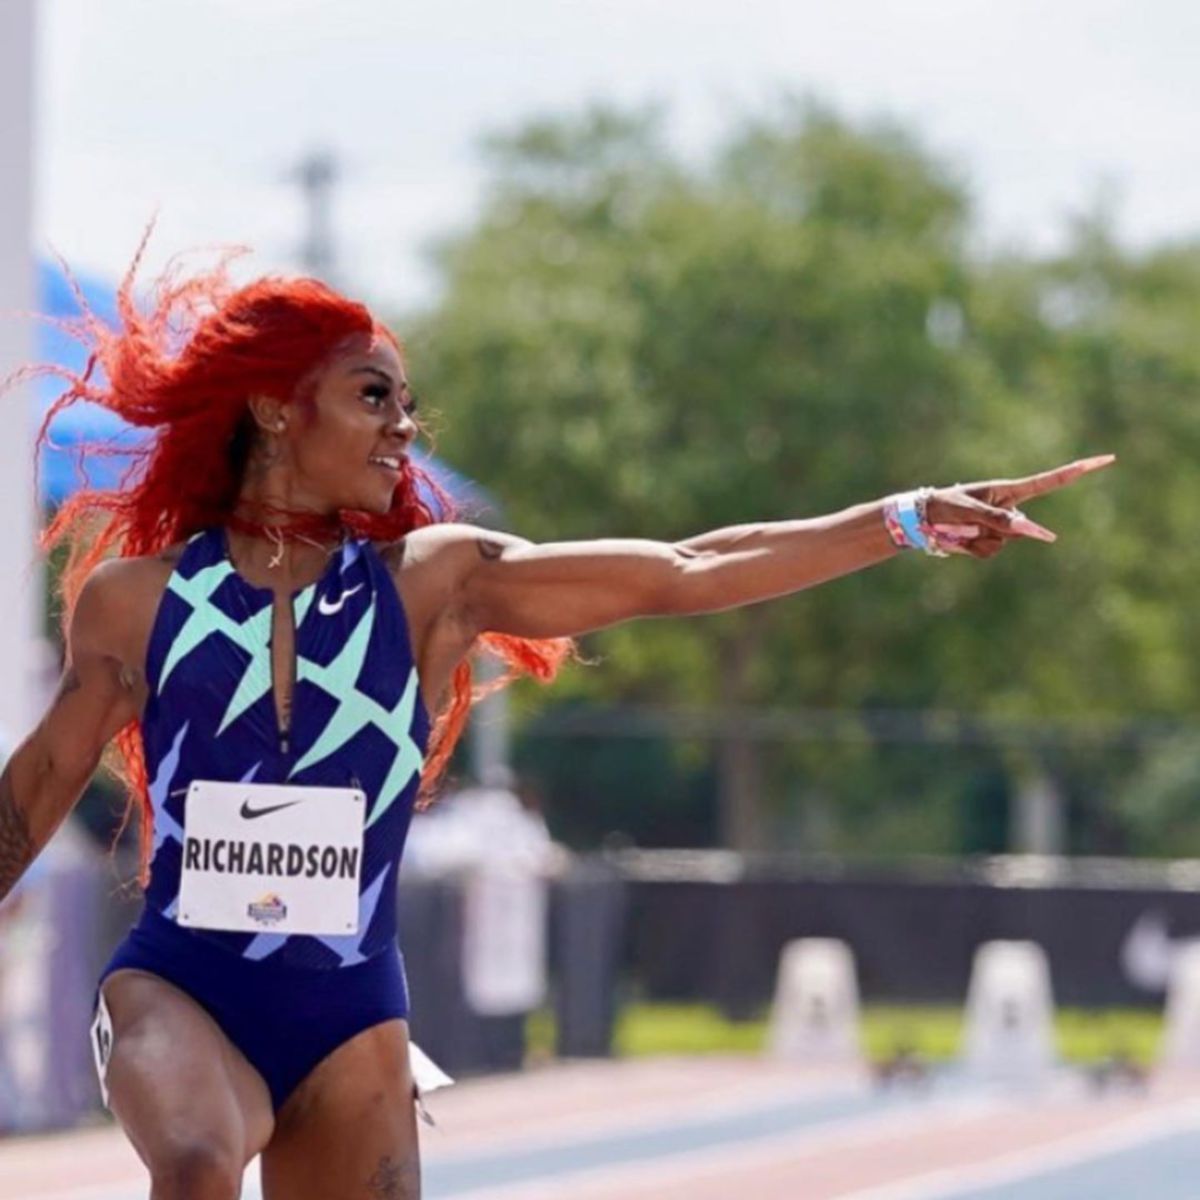 KEMENANGAN Sha'Carri dalam acara 100m ditarik selepas positif doping. FOTO Instagram